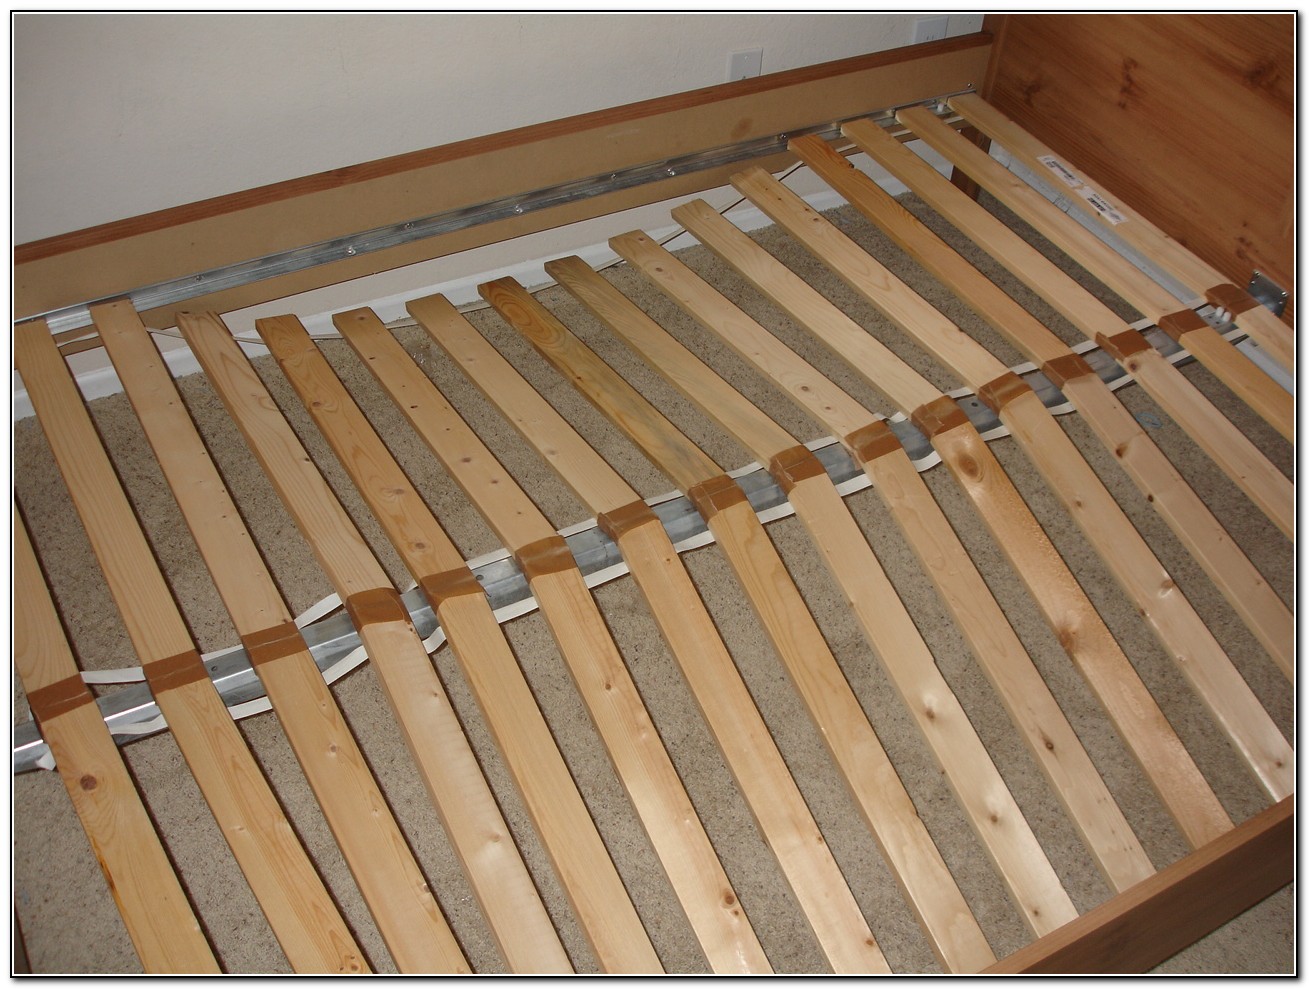 Кровать двуспальная с рейками